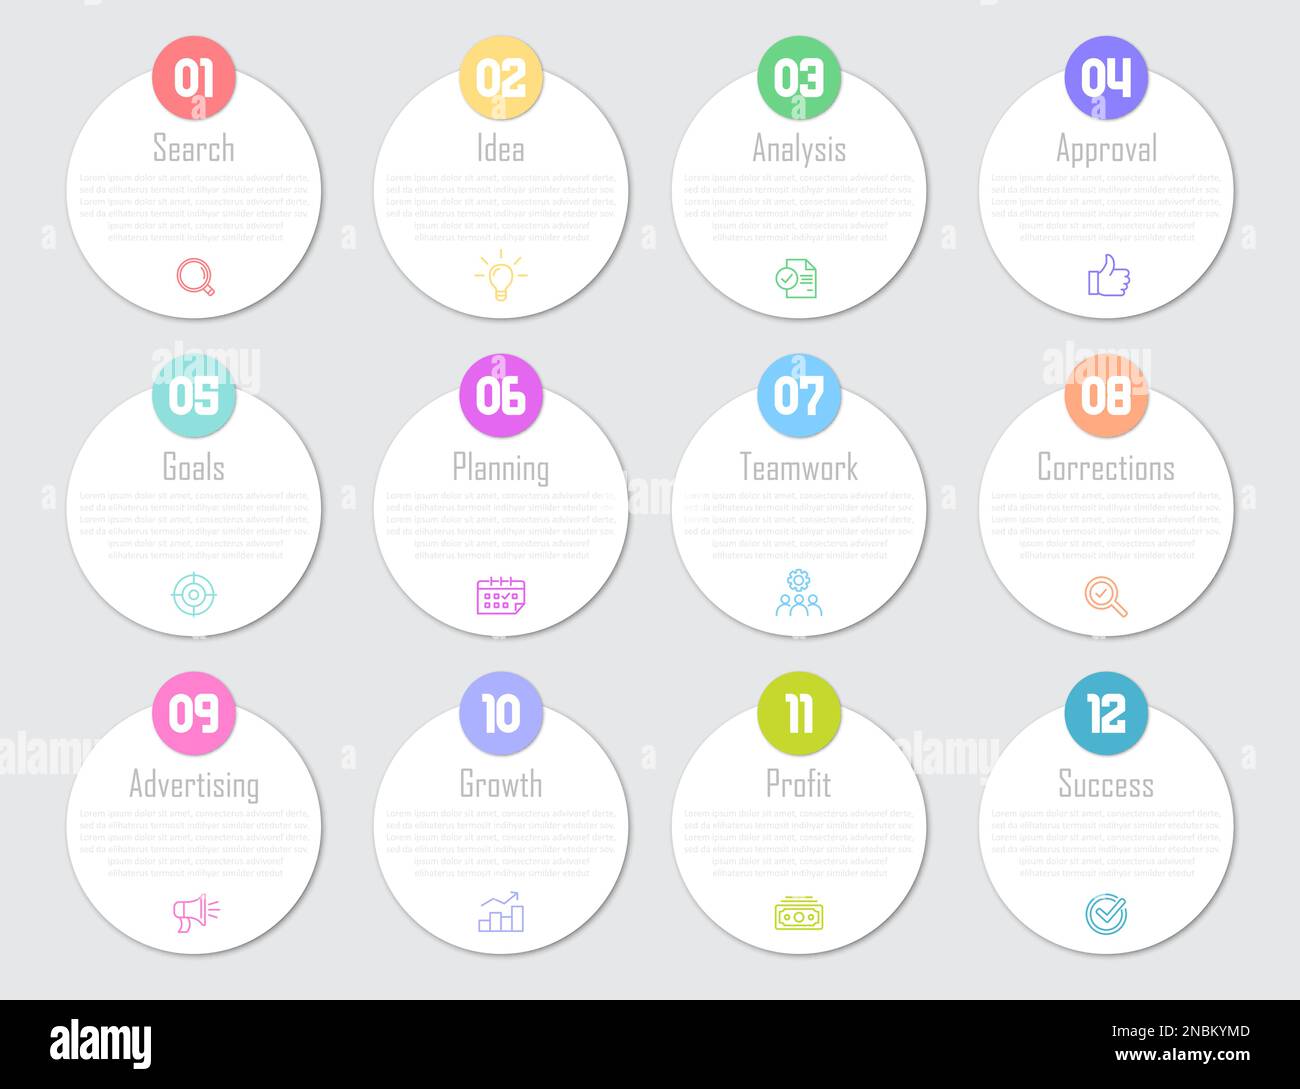 Infographie d'entreprise avec 12 étapes pour réussir un projet d'entreprise Illustration de Vecteur